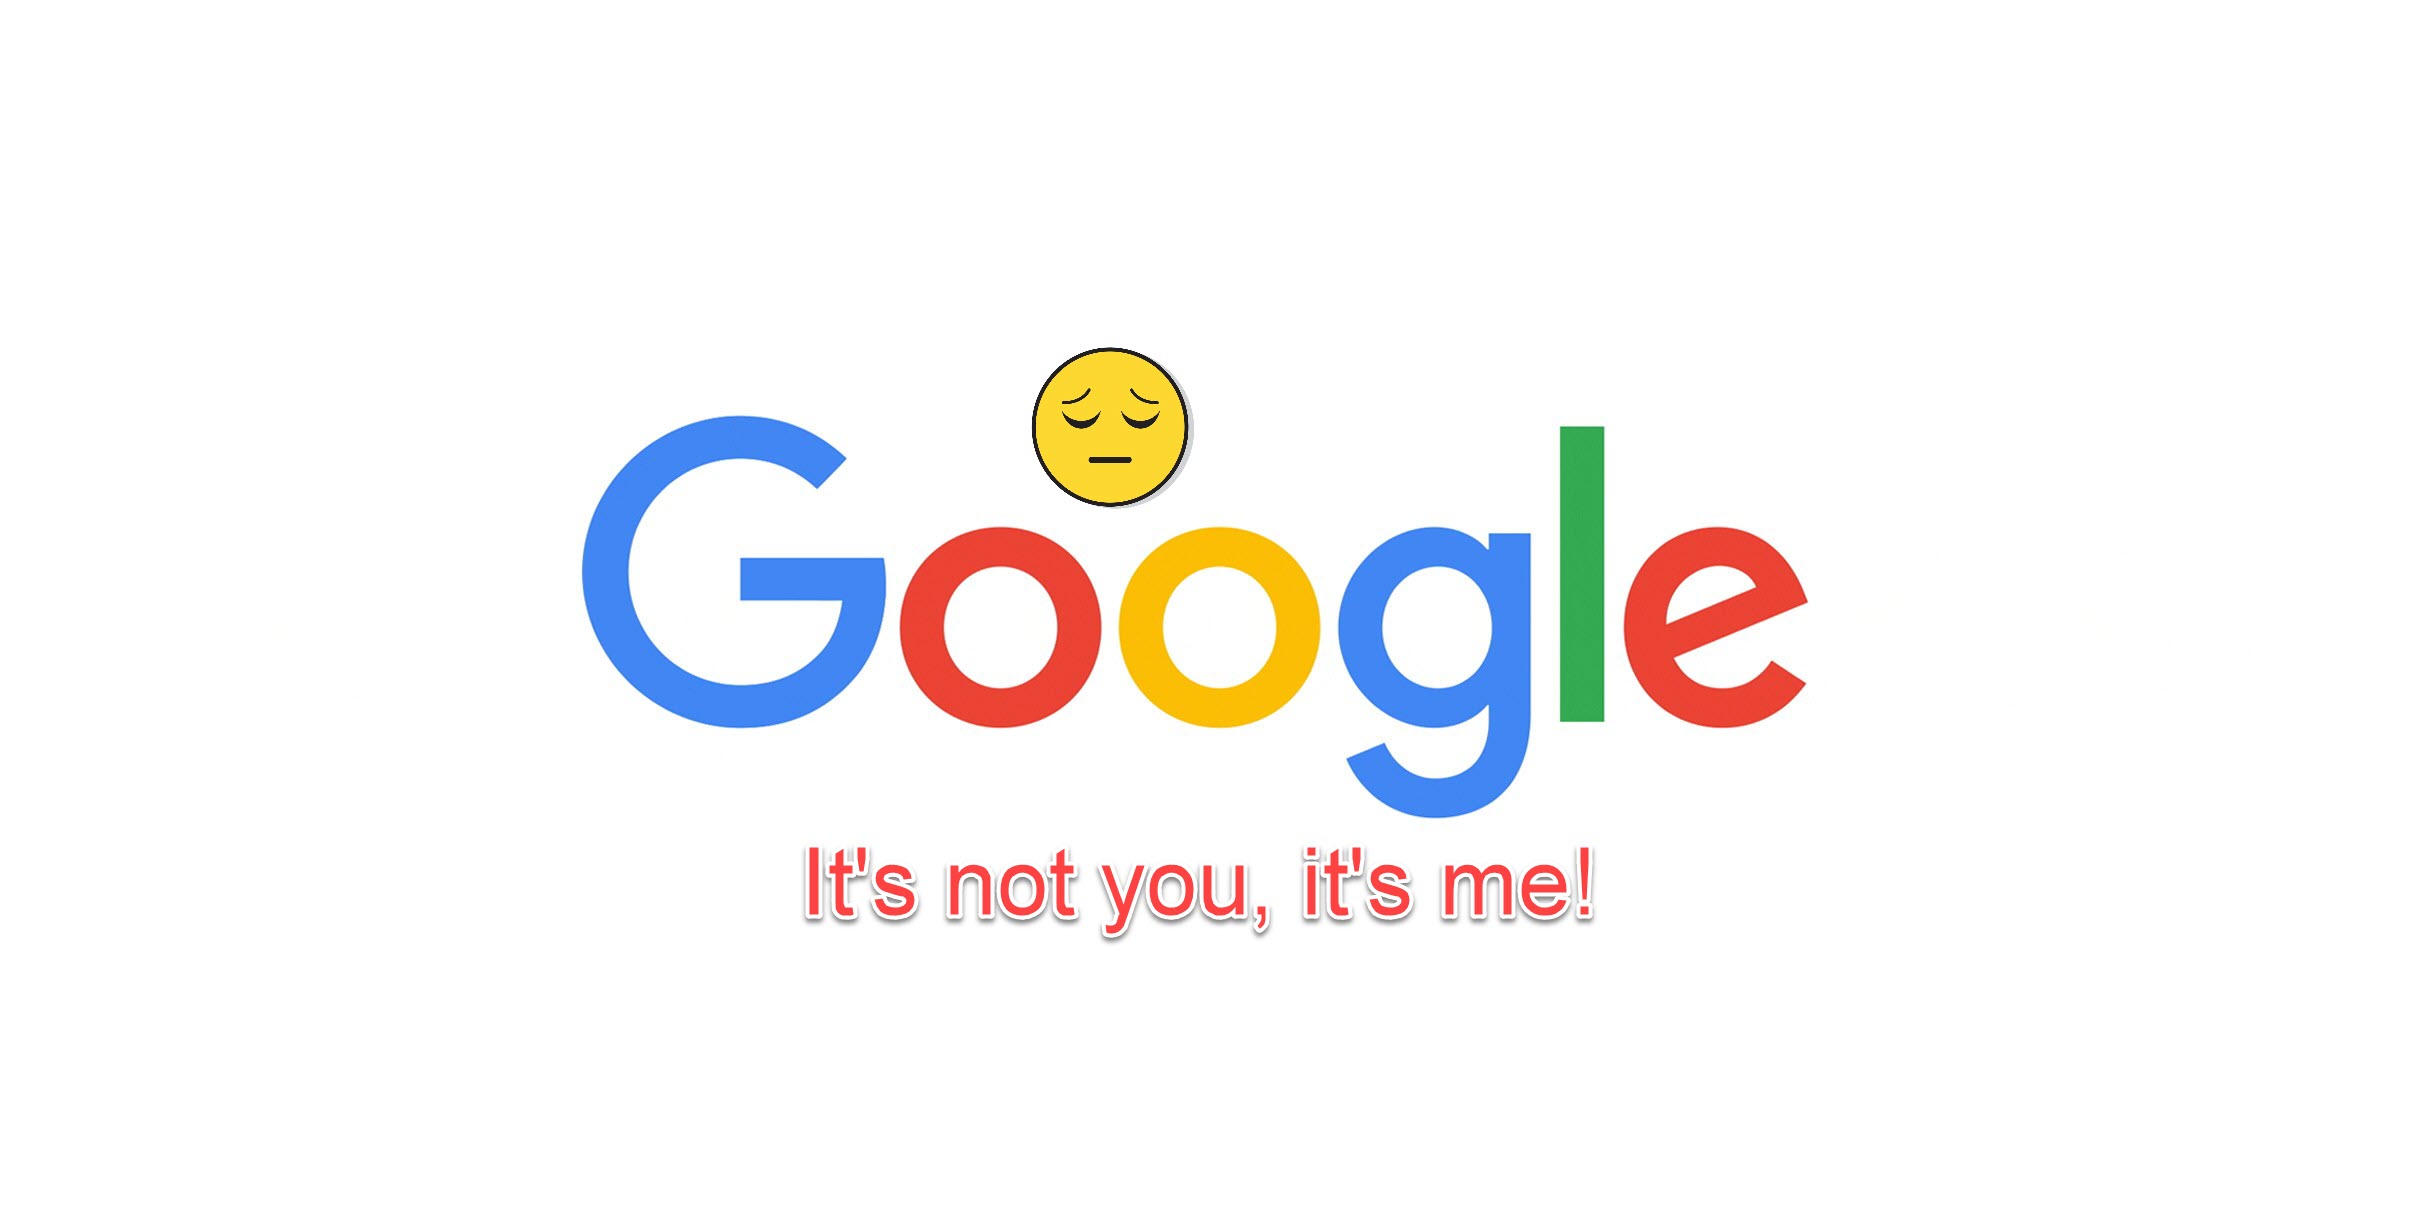 Goodbye Google